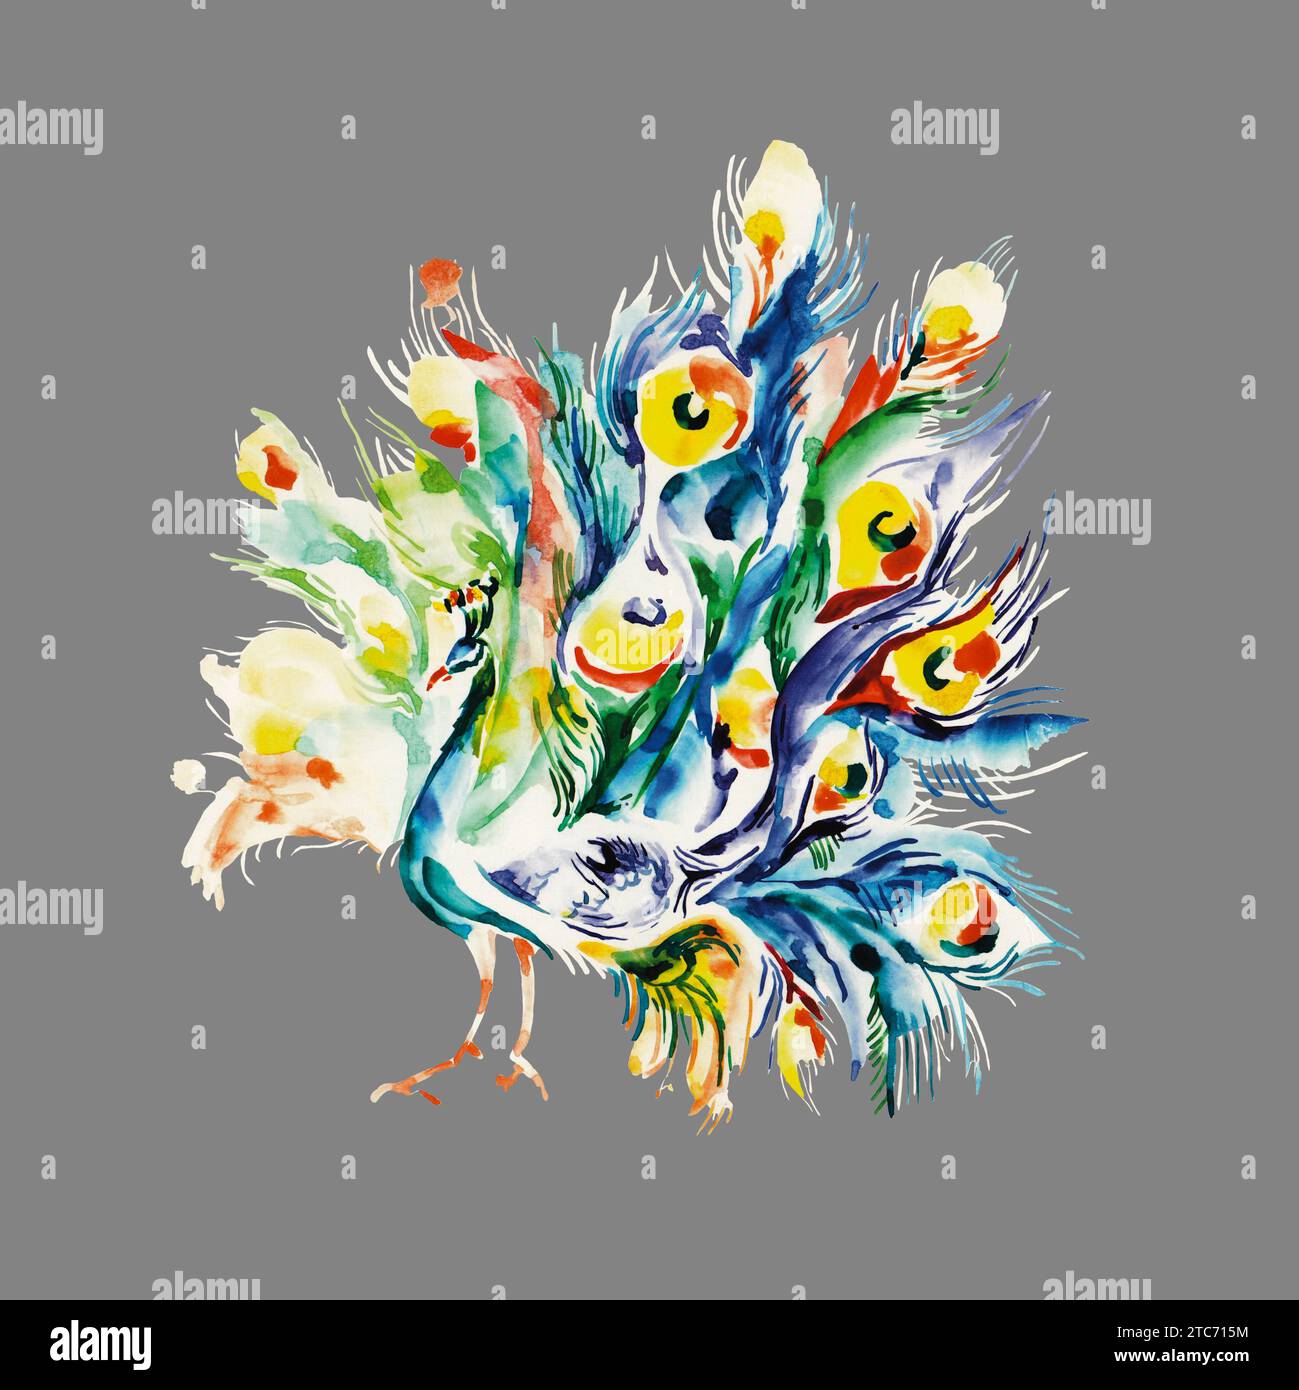 Farbenfroher Pfau für Druck- und Tapetendesign. Handgezeichnete Aquarelle. Schönes Vogelgemälde auf grauem Hintergrund. Türkisfarbene, blaue, grüne Feder. Stockfoto